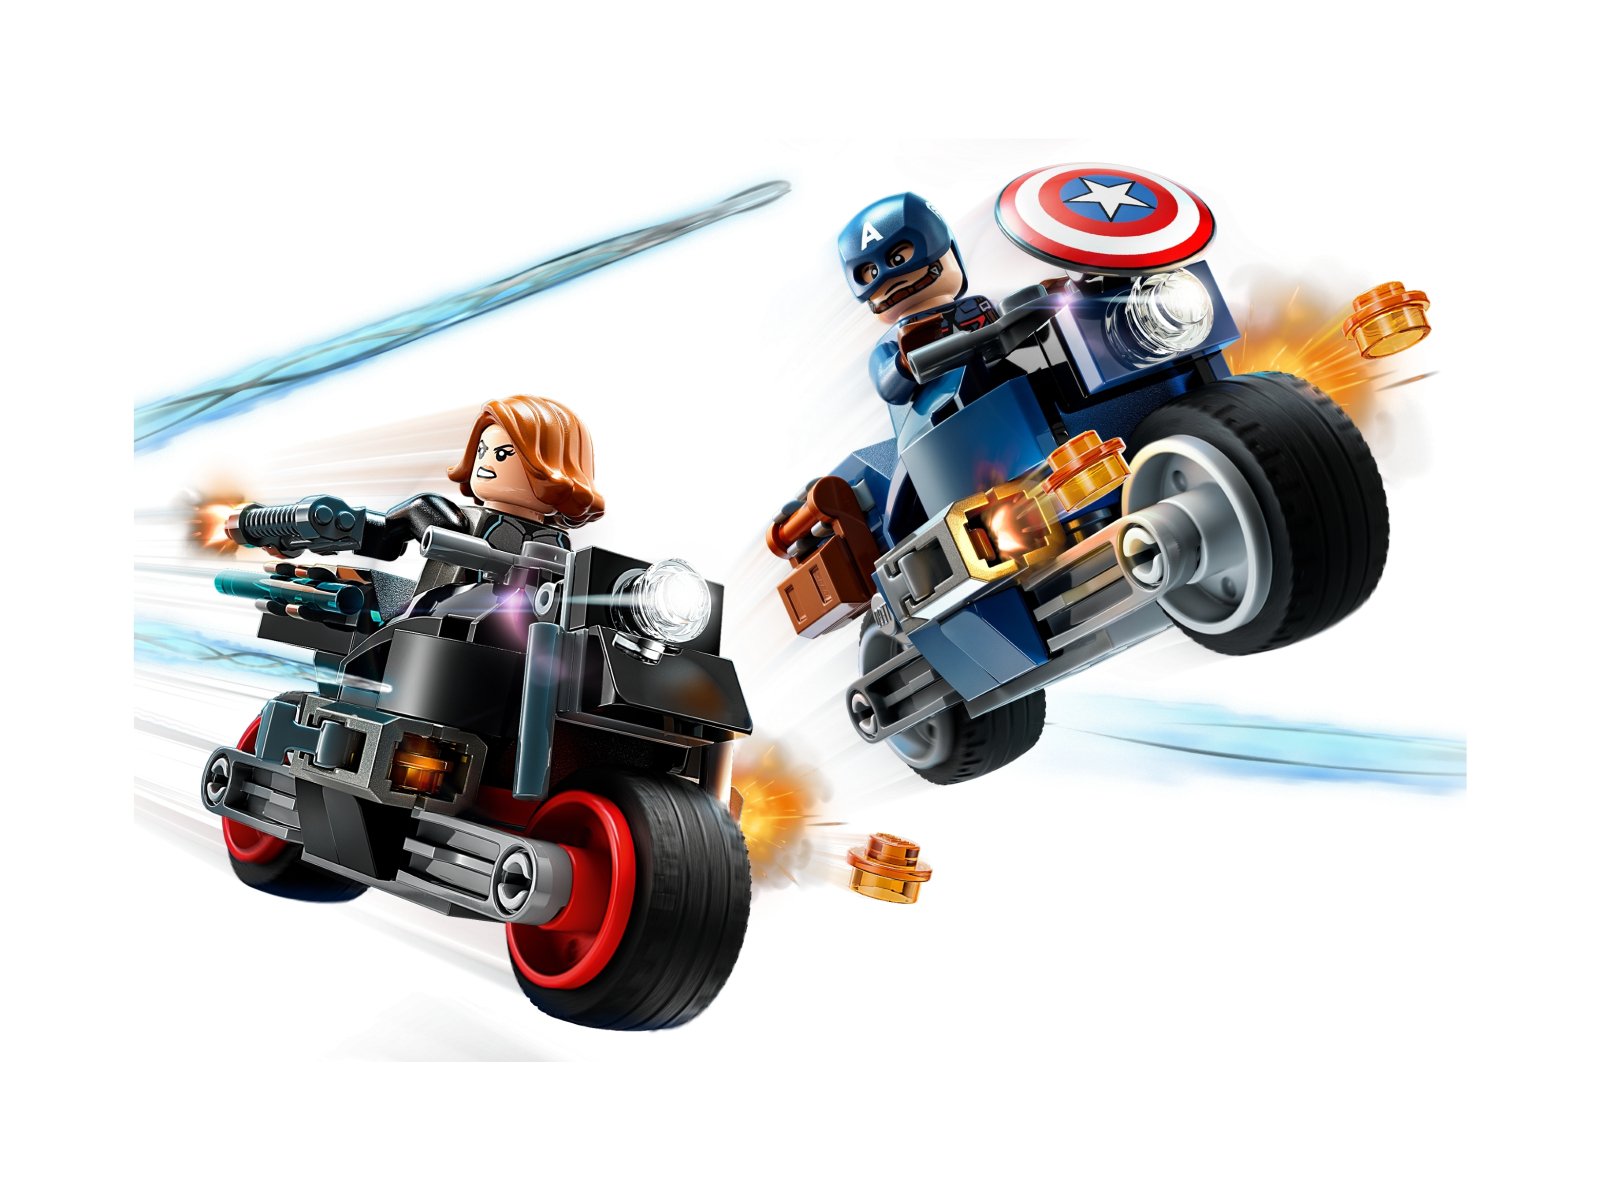 LEGO Marvel 76260 Motocykle Czarnej Wdowy i Kapitana Ameryki